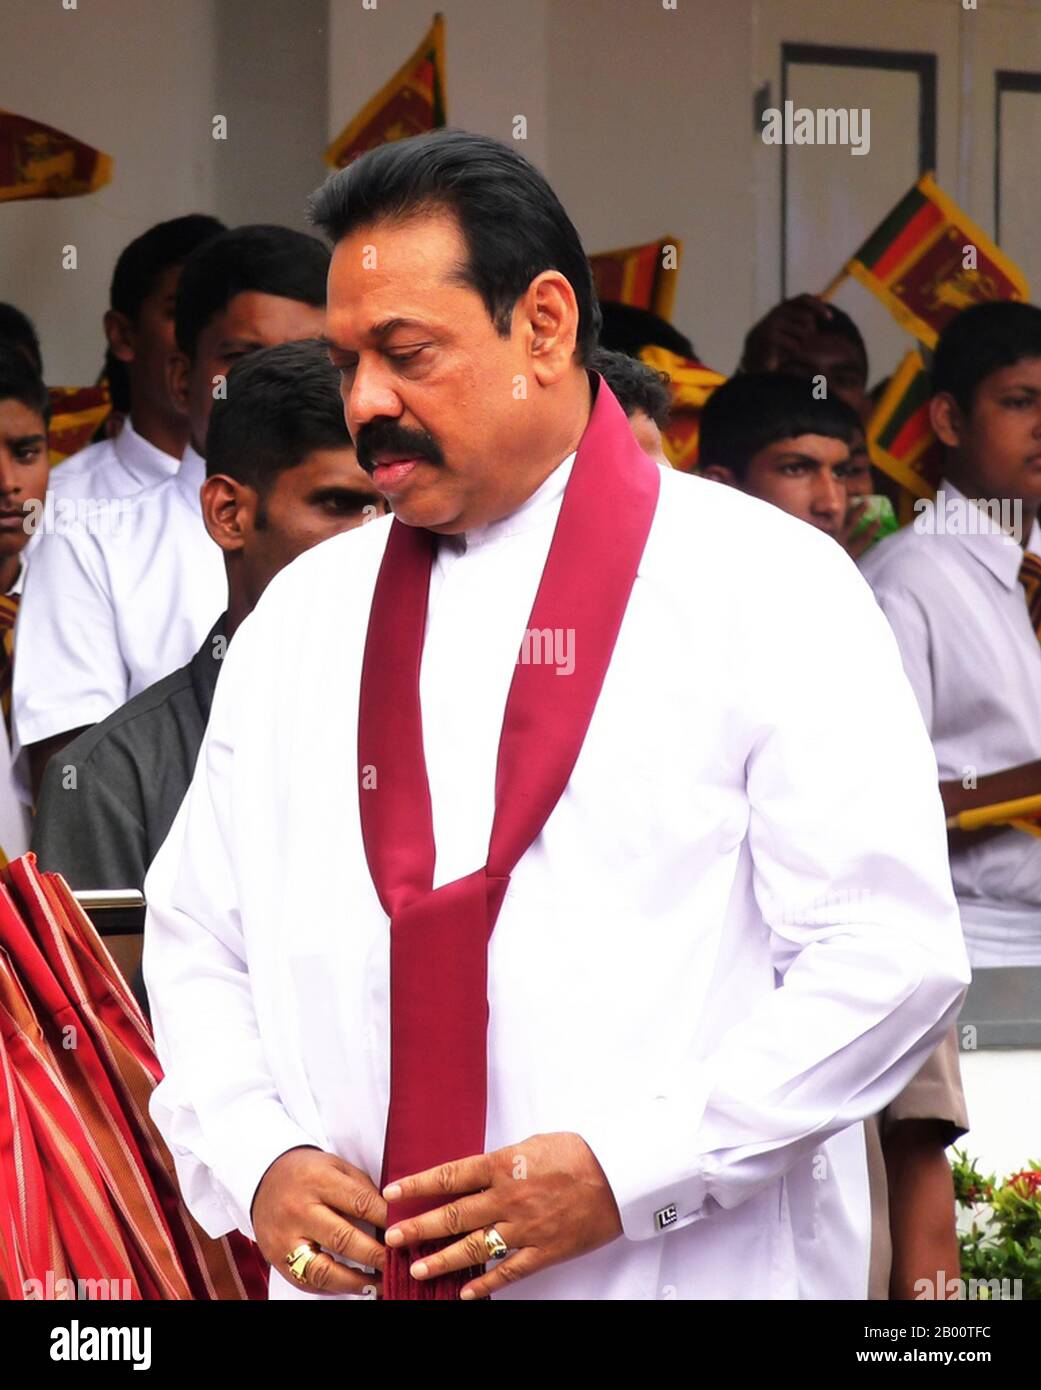 Sri Lanka: Mahendra Rajapaksa, 6 ° presidente dello Sri Lanka (2005- ). Foto di Rajith Vidanaarachchi (licenza CC BY-SA 2.0). Percy Mahendra 'Mahindaa' Rajapaksa (sopportato il 18 novembre 1945) è il sesto ed attuale presidente dello Sri Lanka e comandante in capo delle forze armate dello Sri Lanka. Avvocato di professione, Rajapaksa è stato eletto per la prima volta al Parlamento dello Sri Lanka nel 1970, e ha servito come primo ministro dal 6 aprile 2004 fino alla sua vittoria nelle elezioni presidenziali del 2005. È stato giurato per un mandato di sei anni come presidente il 19 novembre 2005. Foto Stock